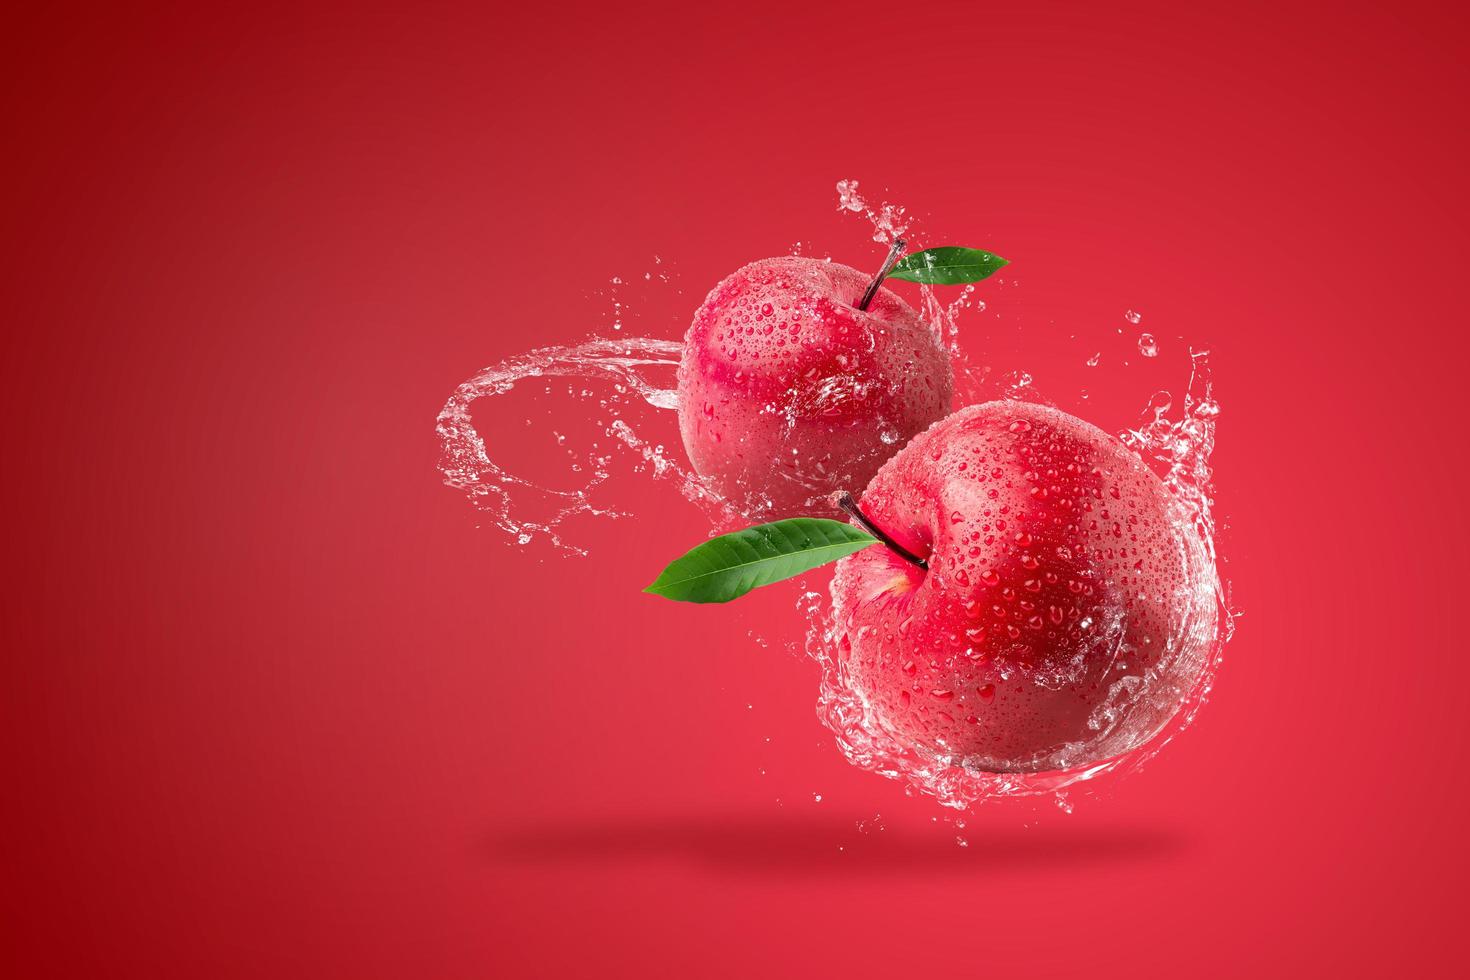 éclaboussures d'eau sur une pomme rouge fraîche photo